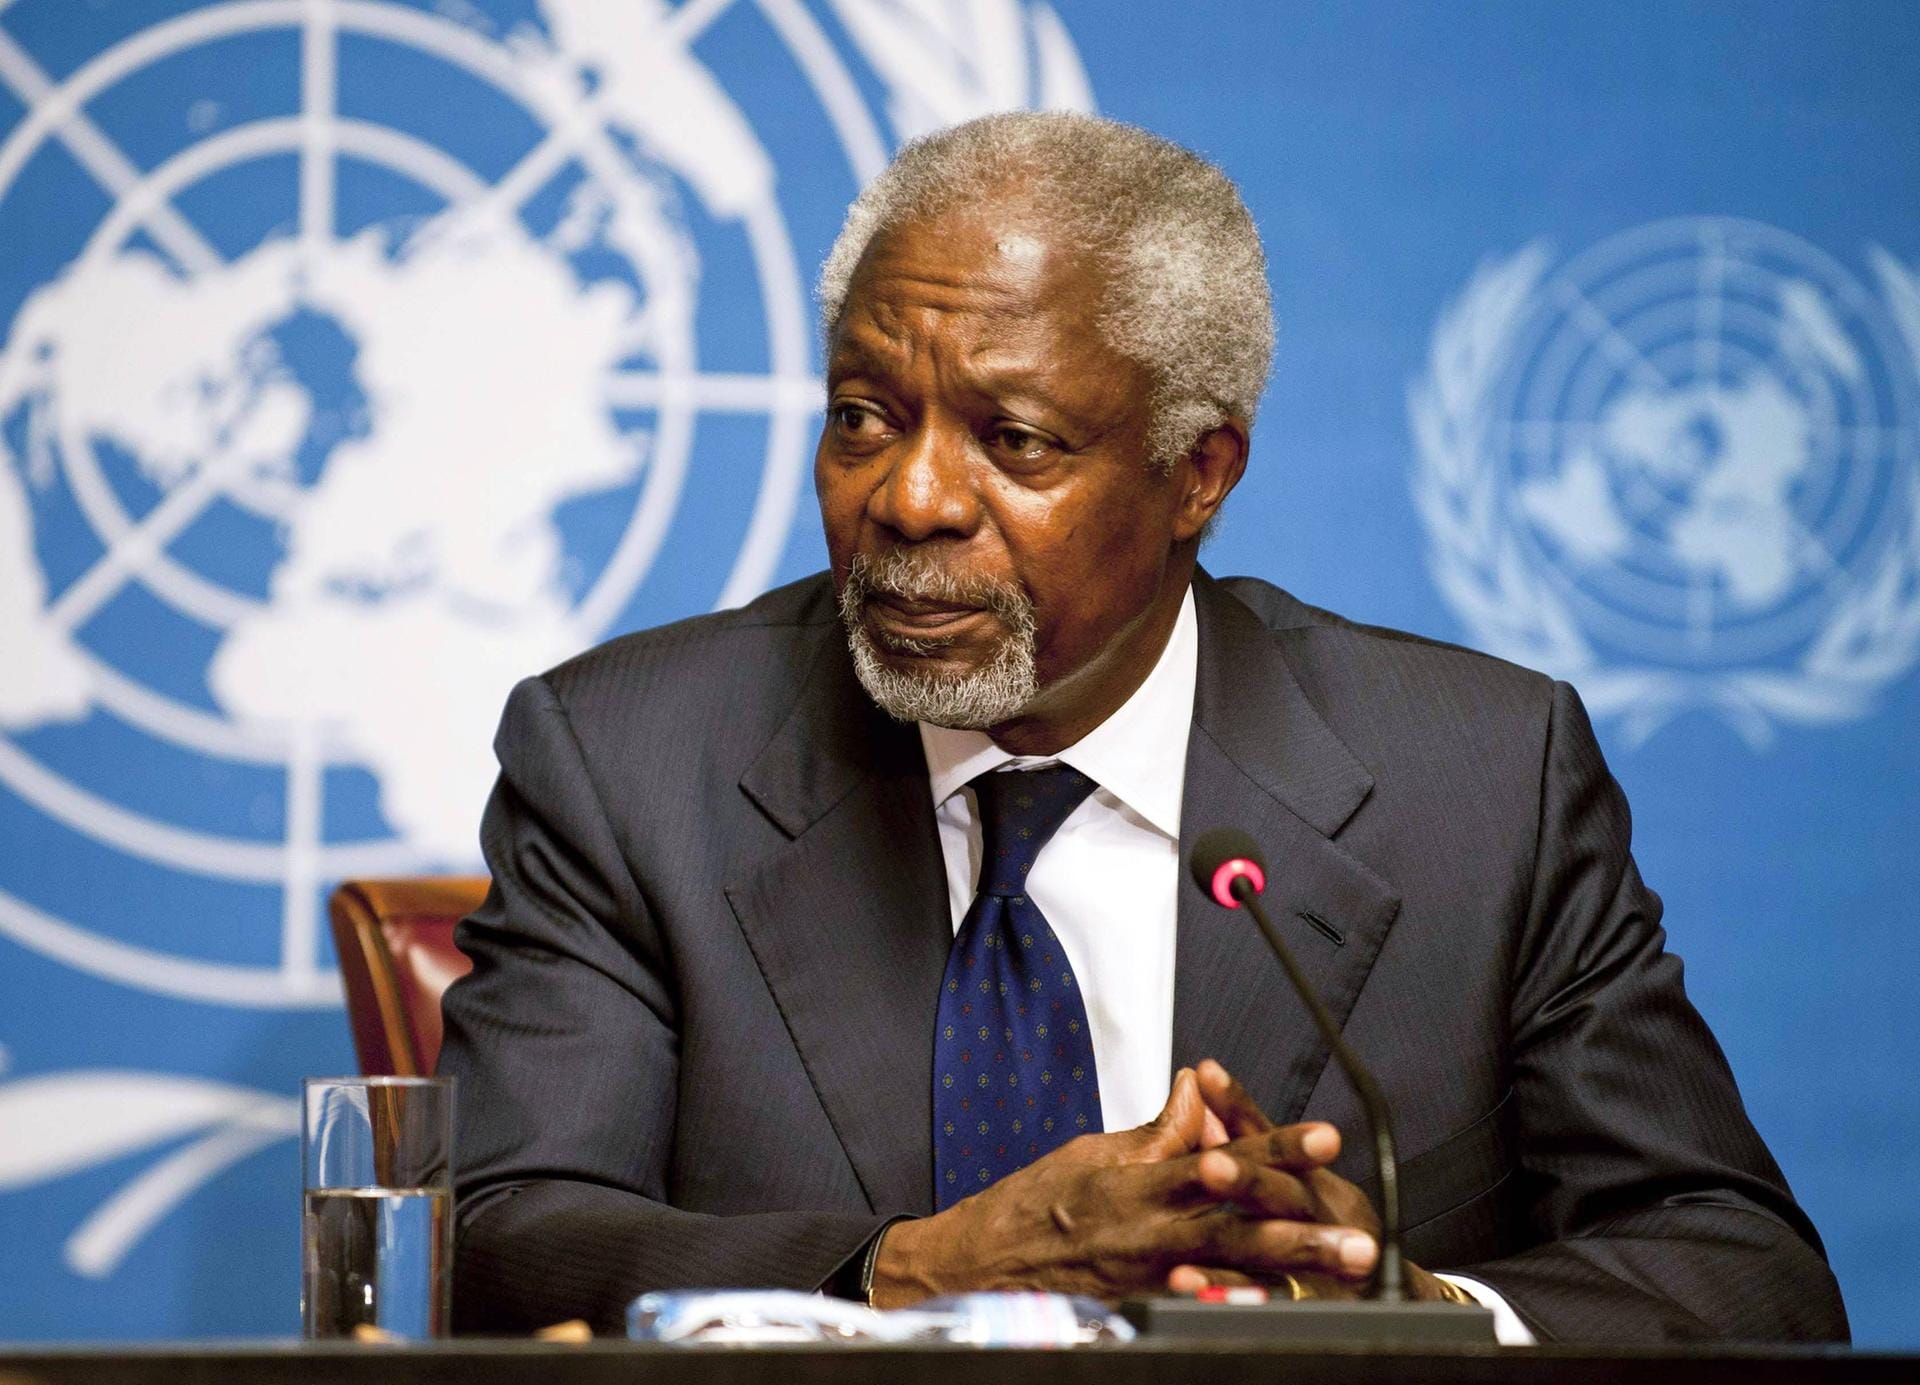 Kofi Annan: Der damalige Generalsekretär und die Vereinten Nationen erhielten 2001 den Friedensnobelpreis. Die Begründung war ihr Einsatz "für eine besser organisierte und friedlichere Welt".